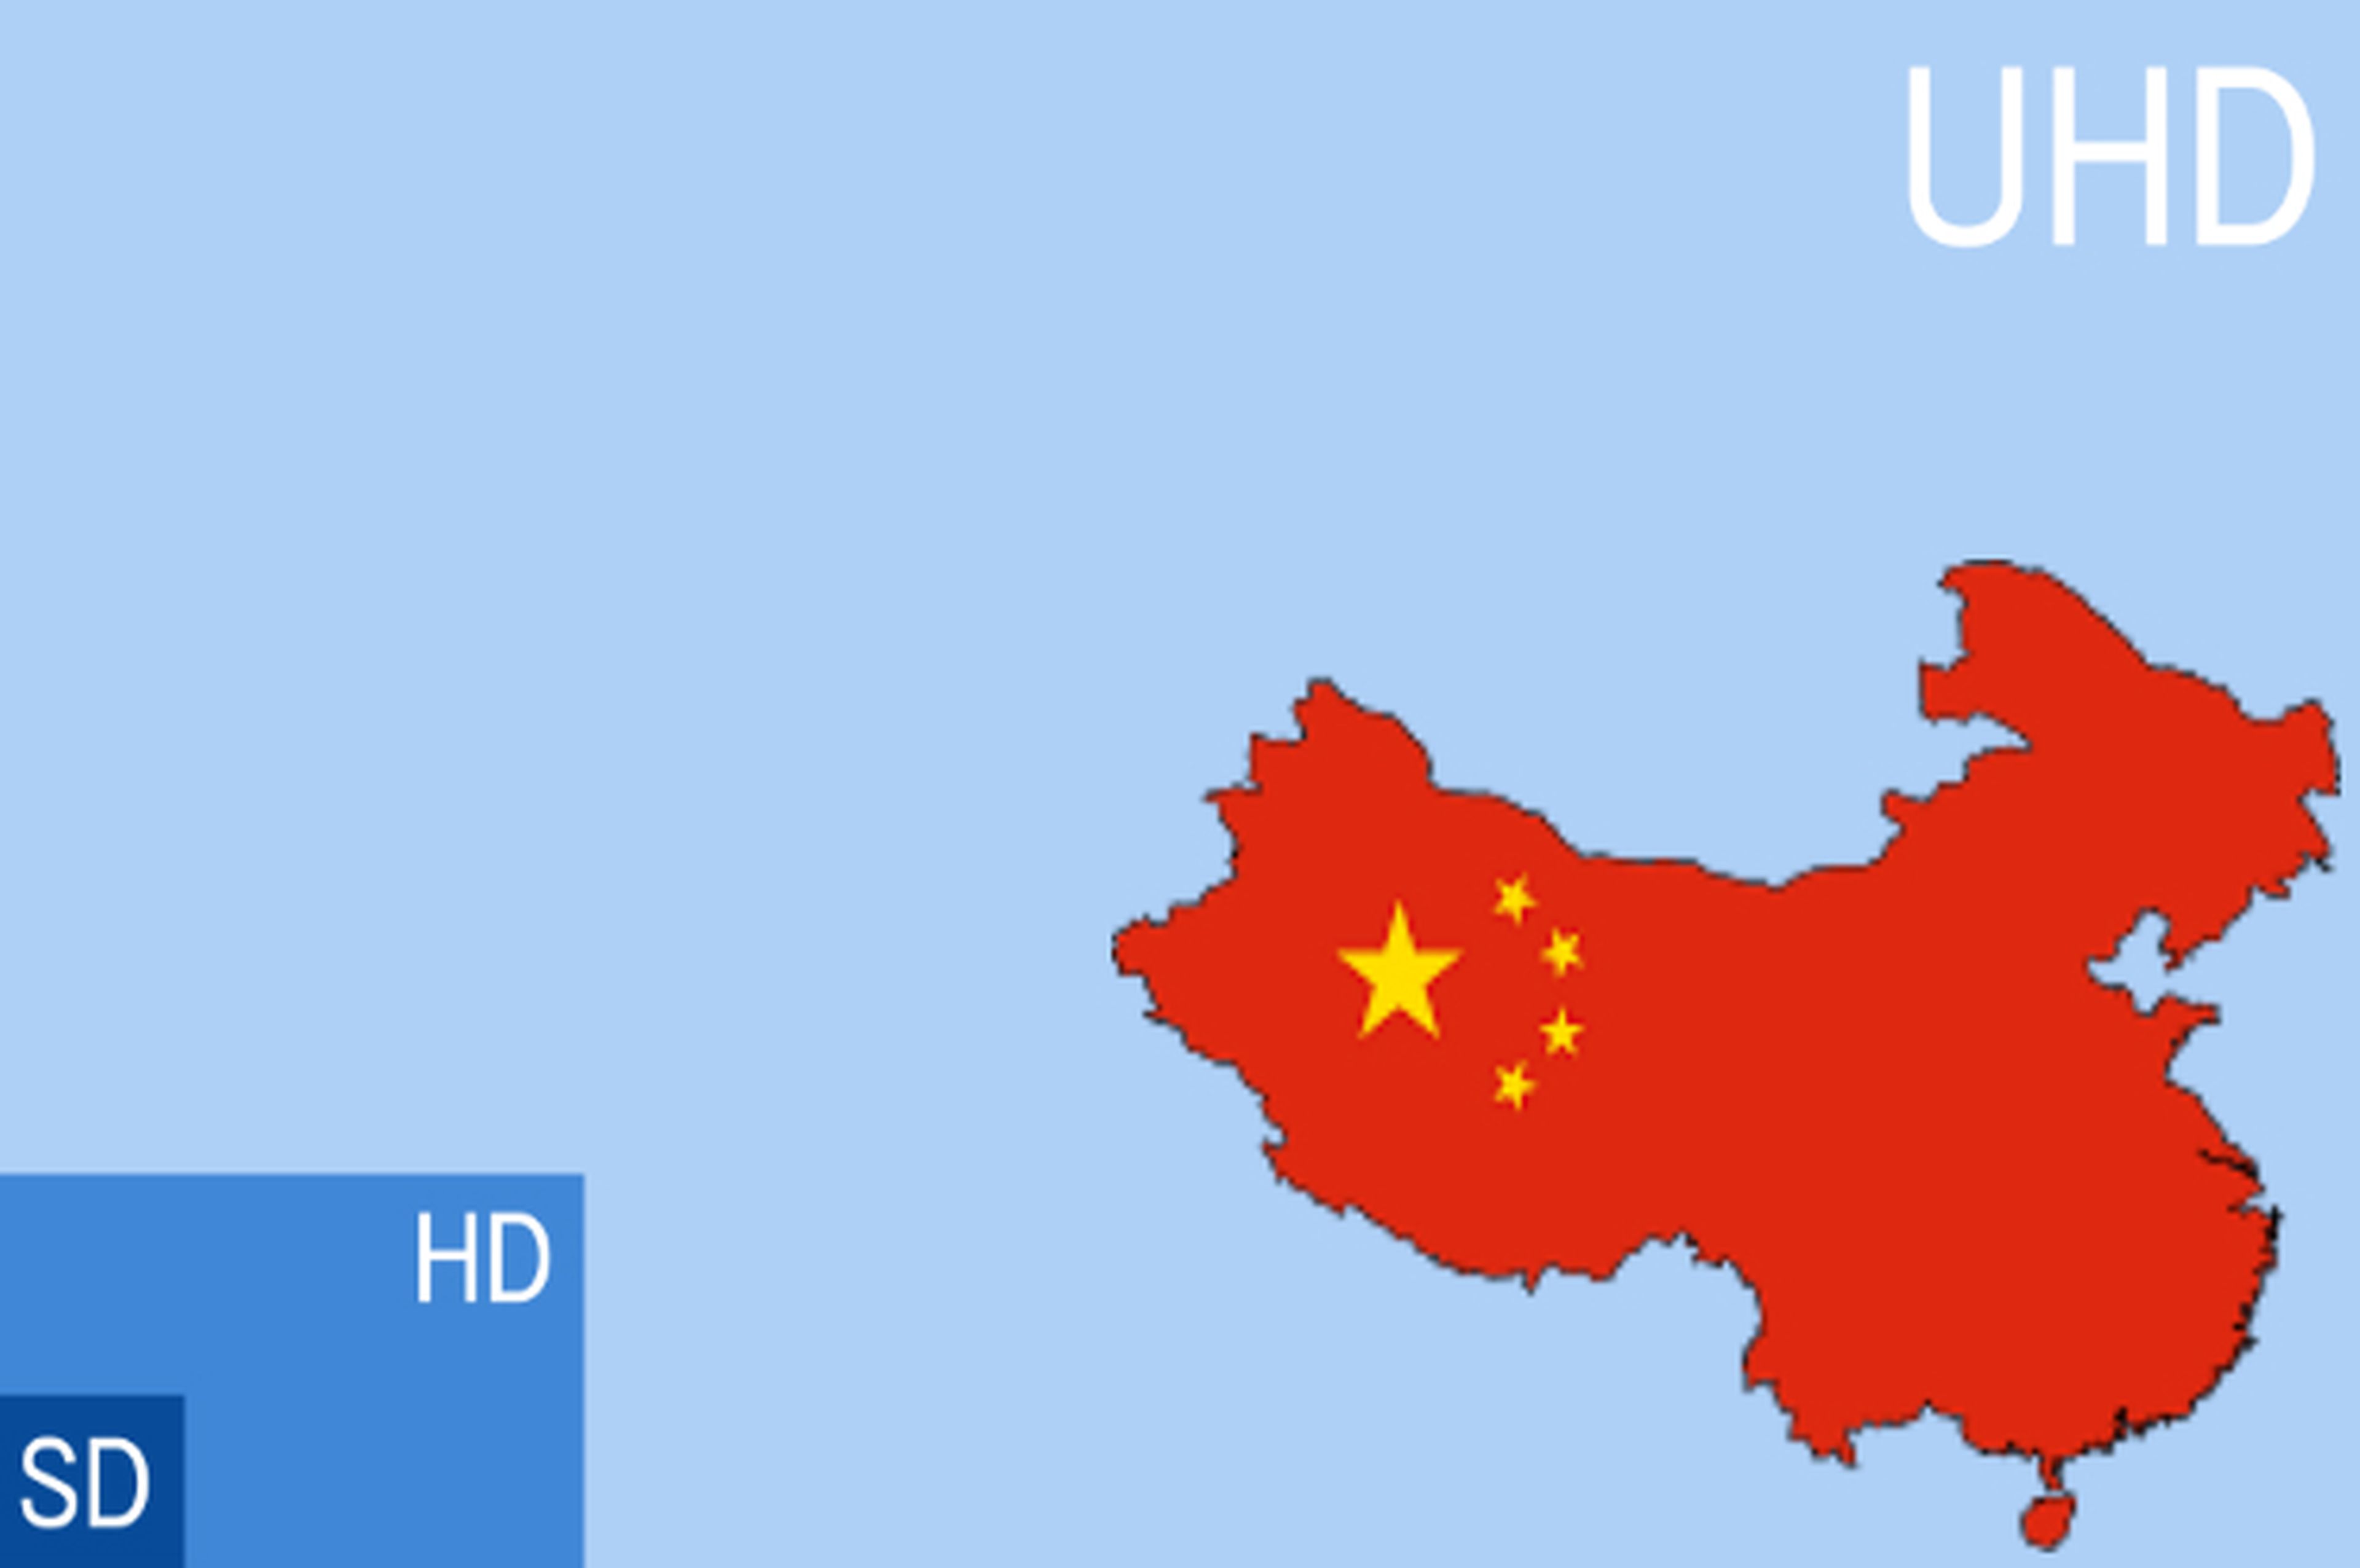 Dimensiones pantalla UHD con mapa de China